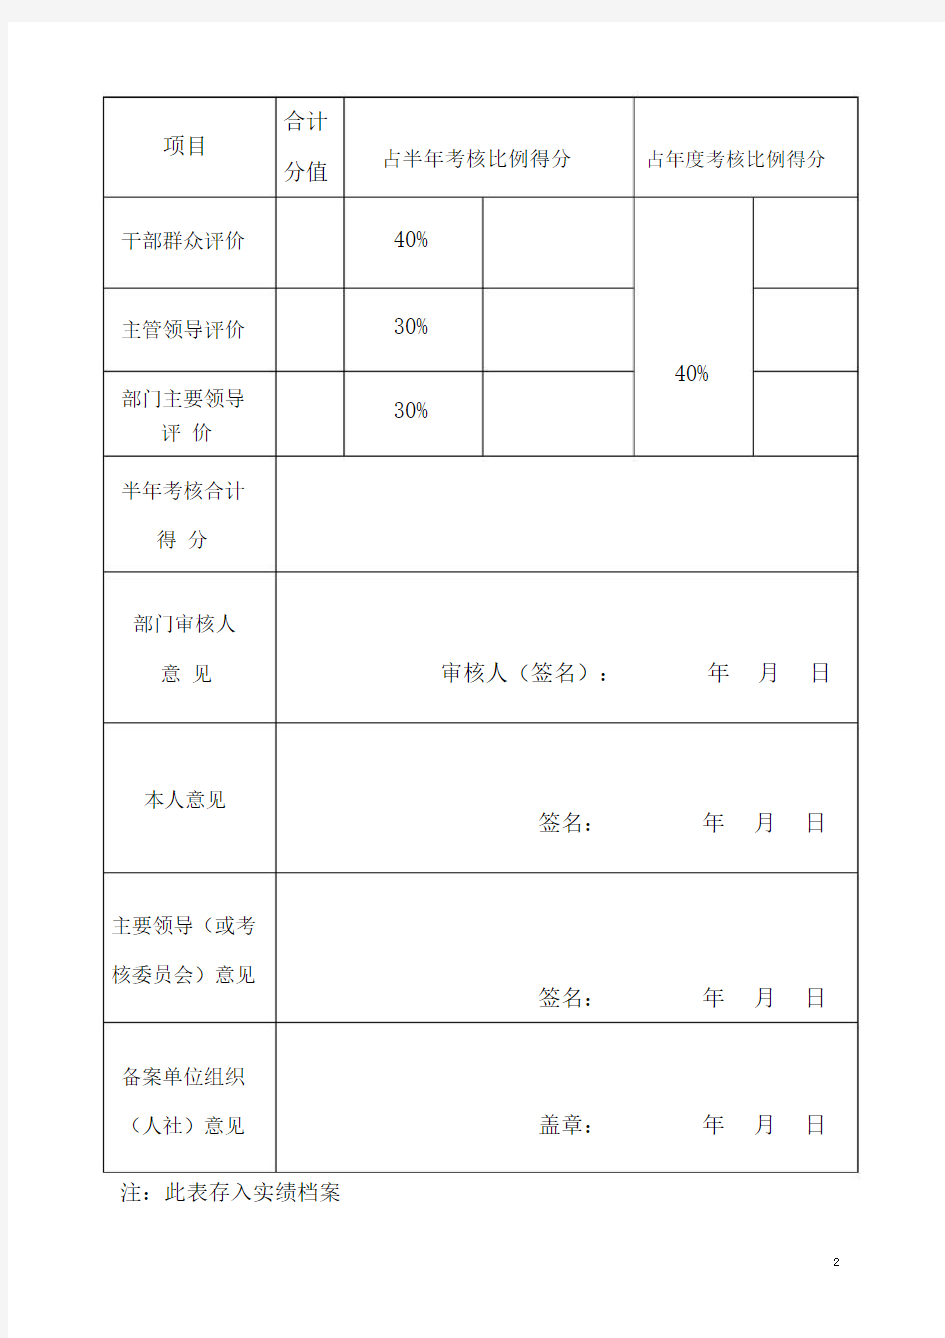 公务员实绩考核登记表(2016年上)